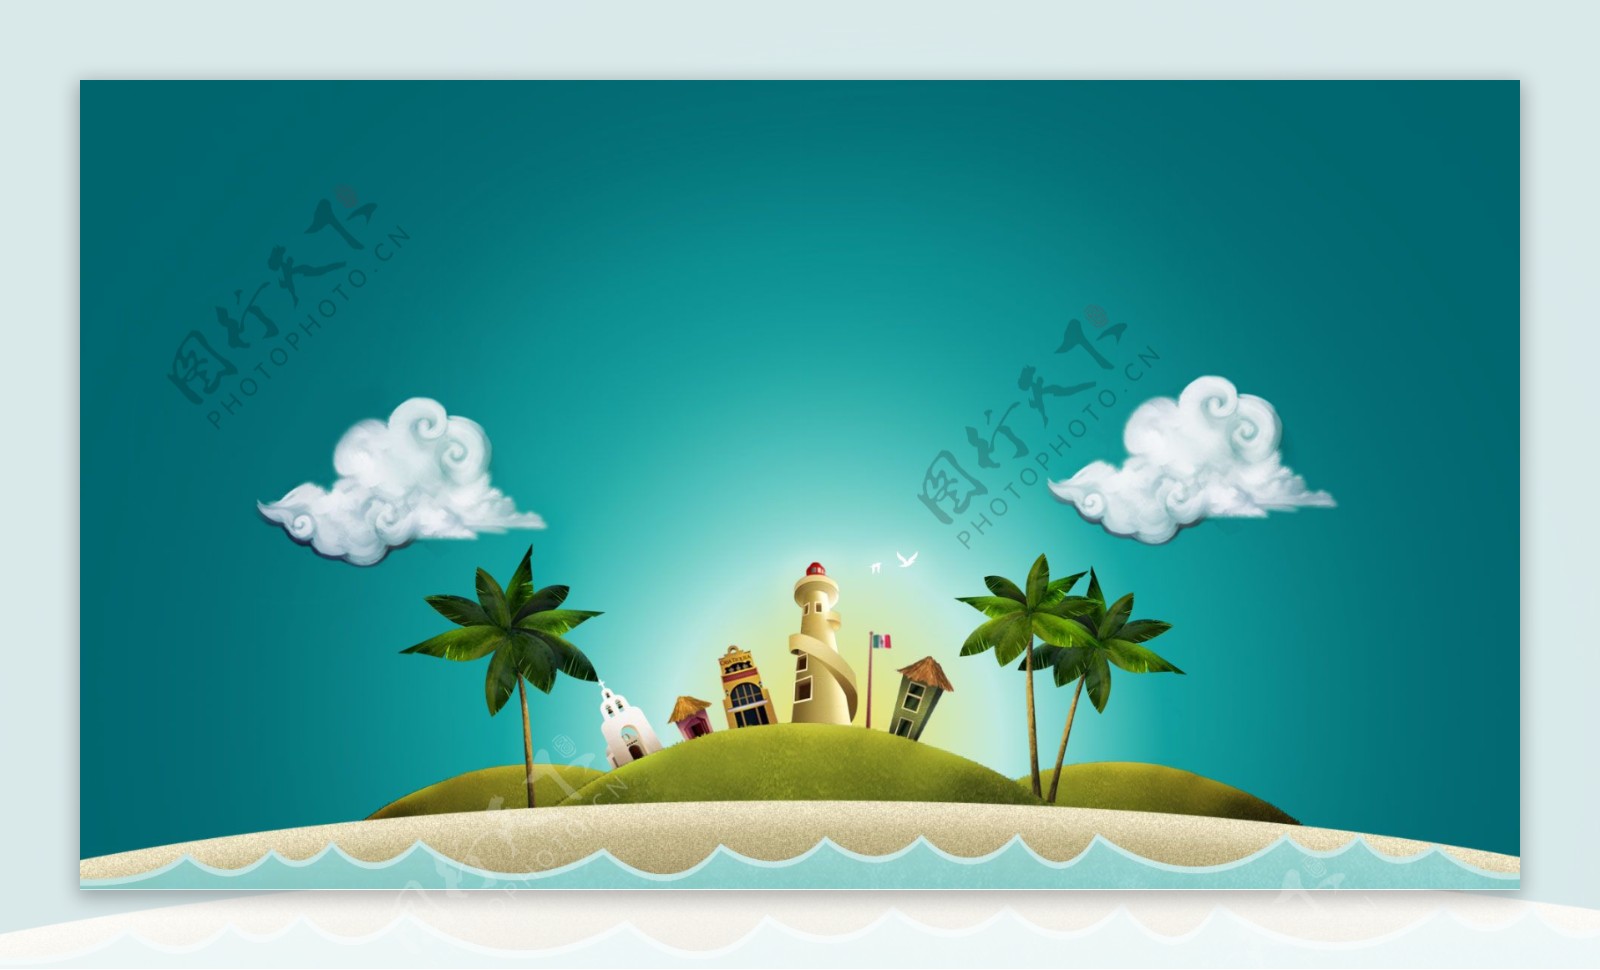 度假海岛风景banner背景